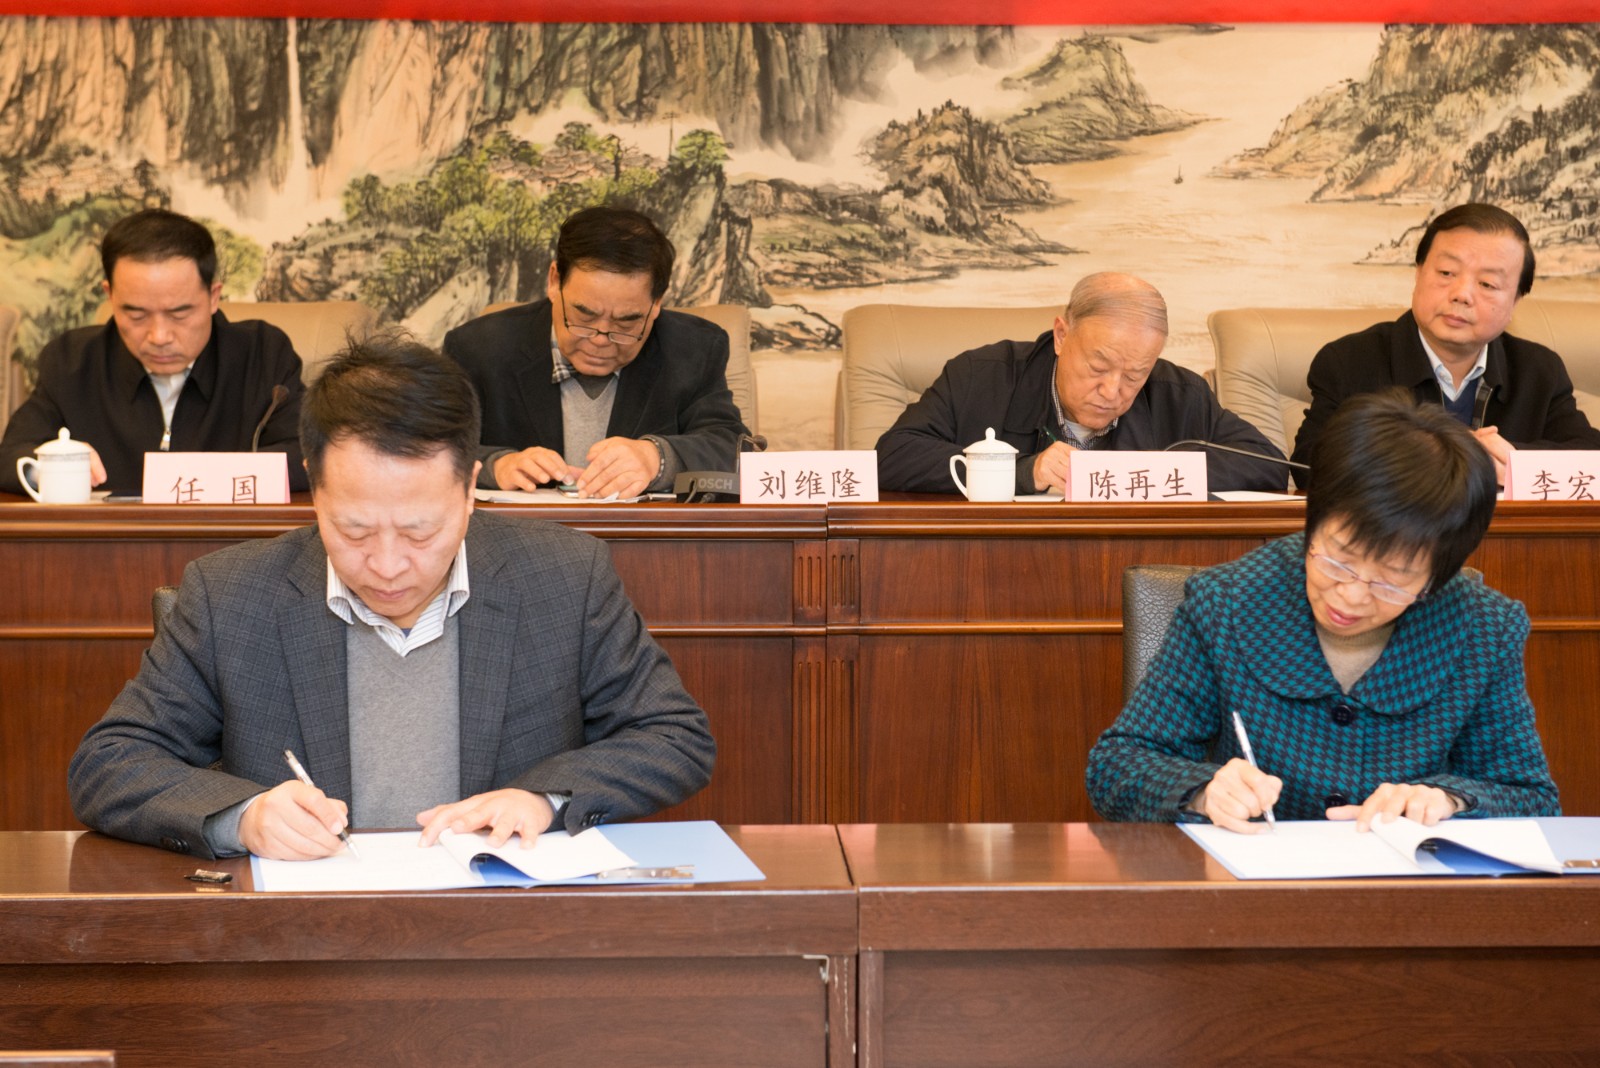 2陕西环保集团与省慈善协会签订项目捐赠协议。.jpg